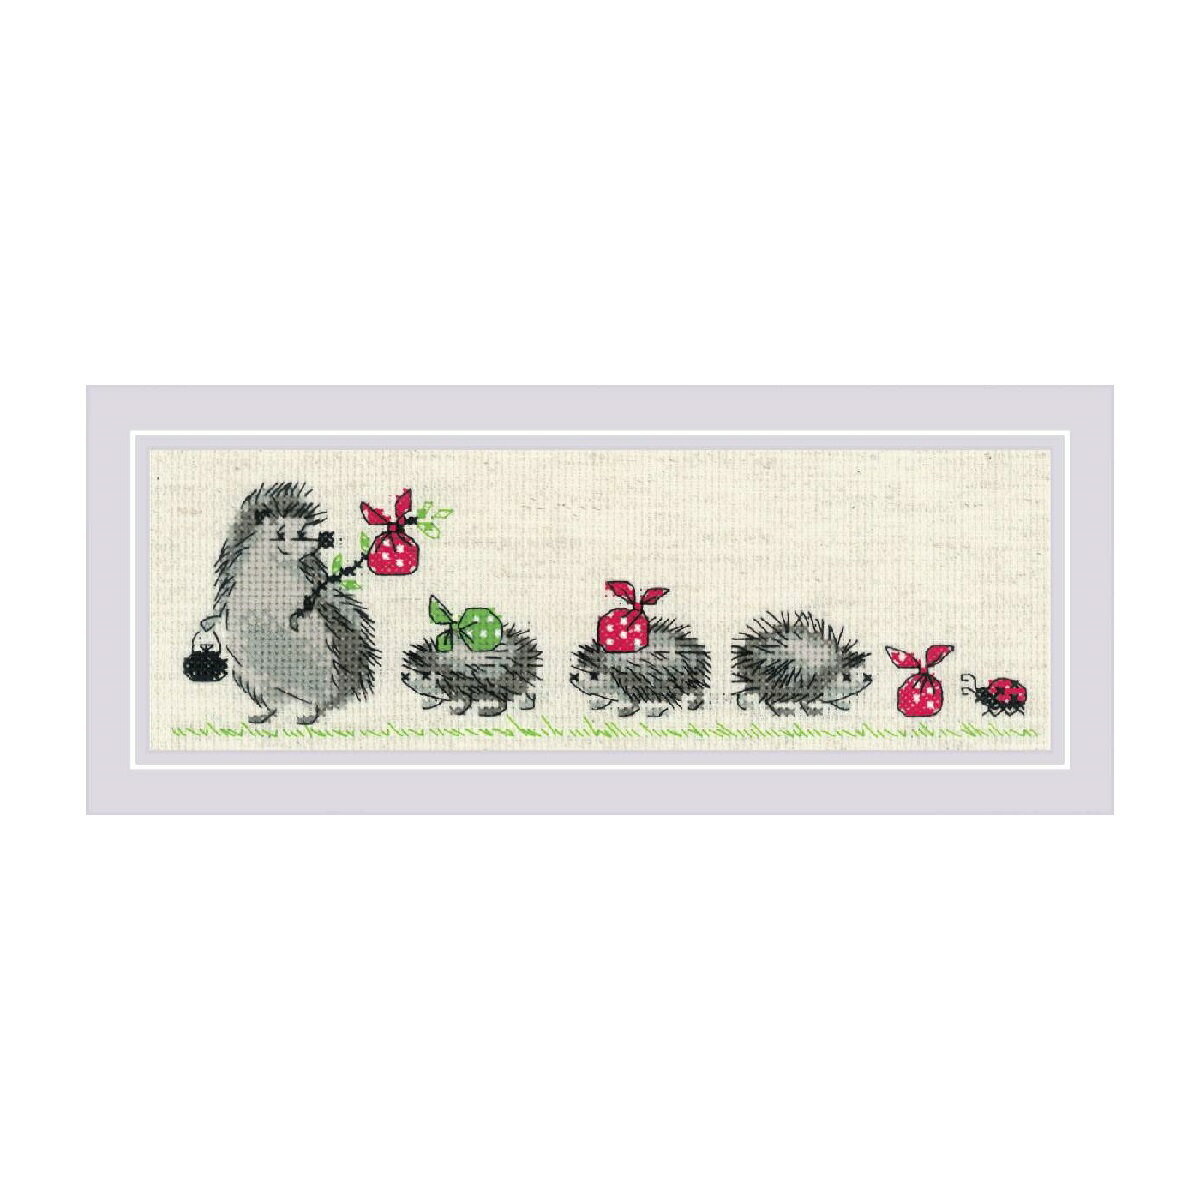 RIOLISクロスステッチ刺繍キット No.1711 「Hedgehogs」 (ハリネズミ) 